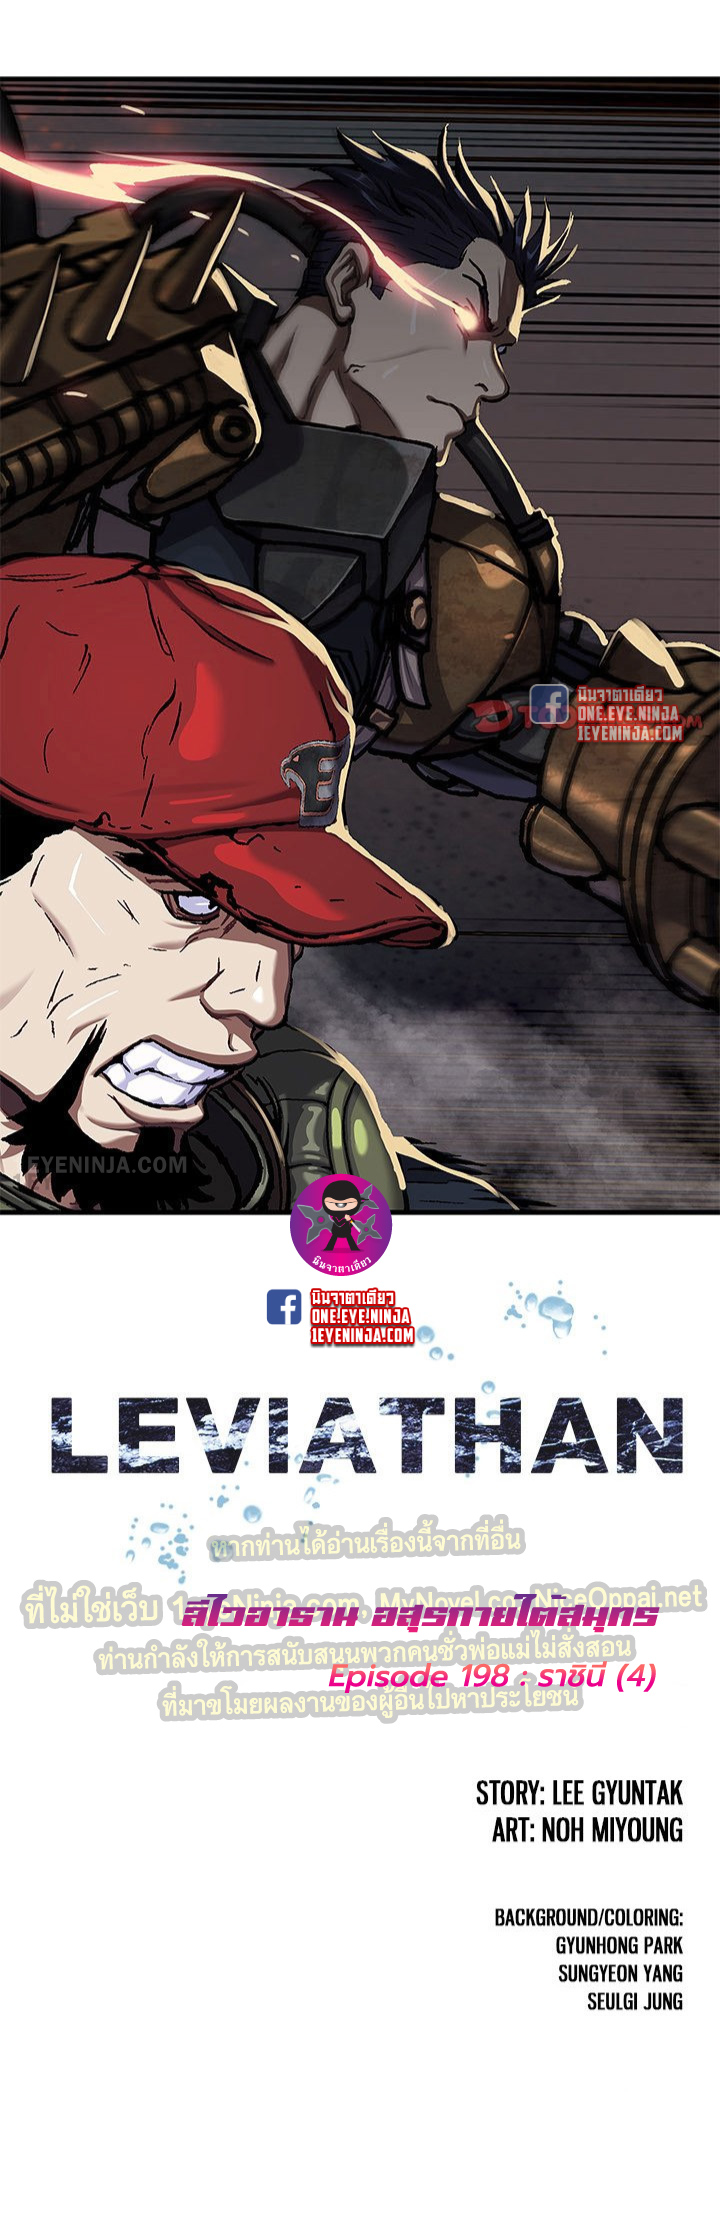 Leviathan198 02